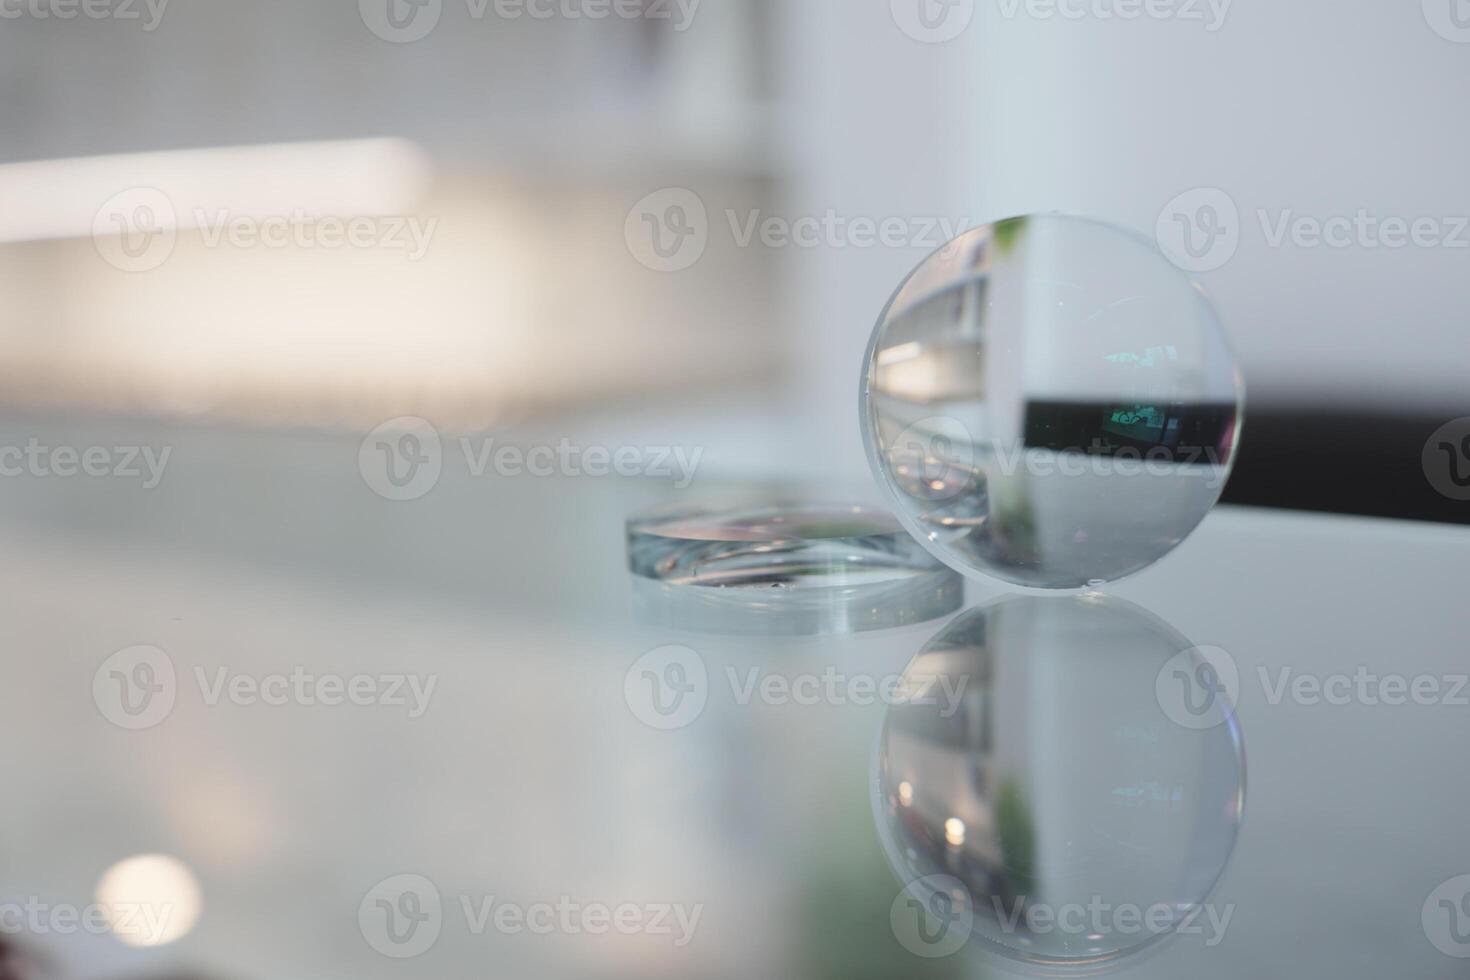 bicchieri lenti a contatto su il tavolo nel ottica, occhiali lenti a contatto foto